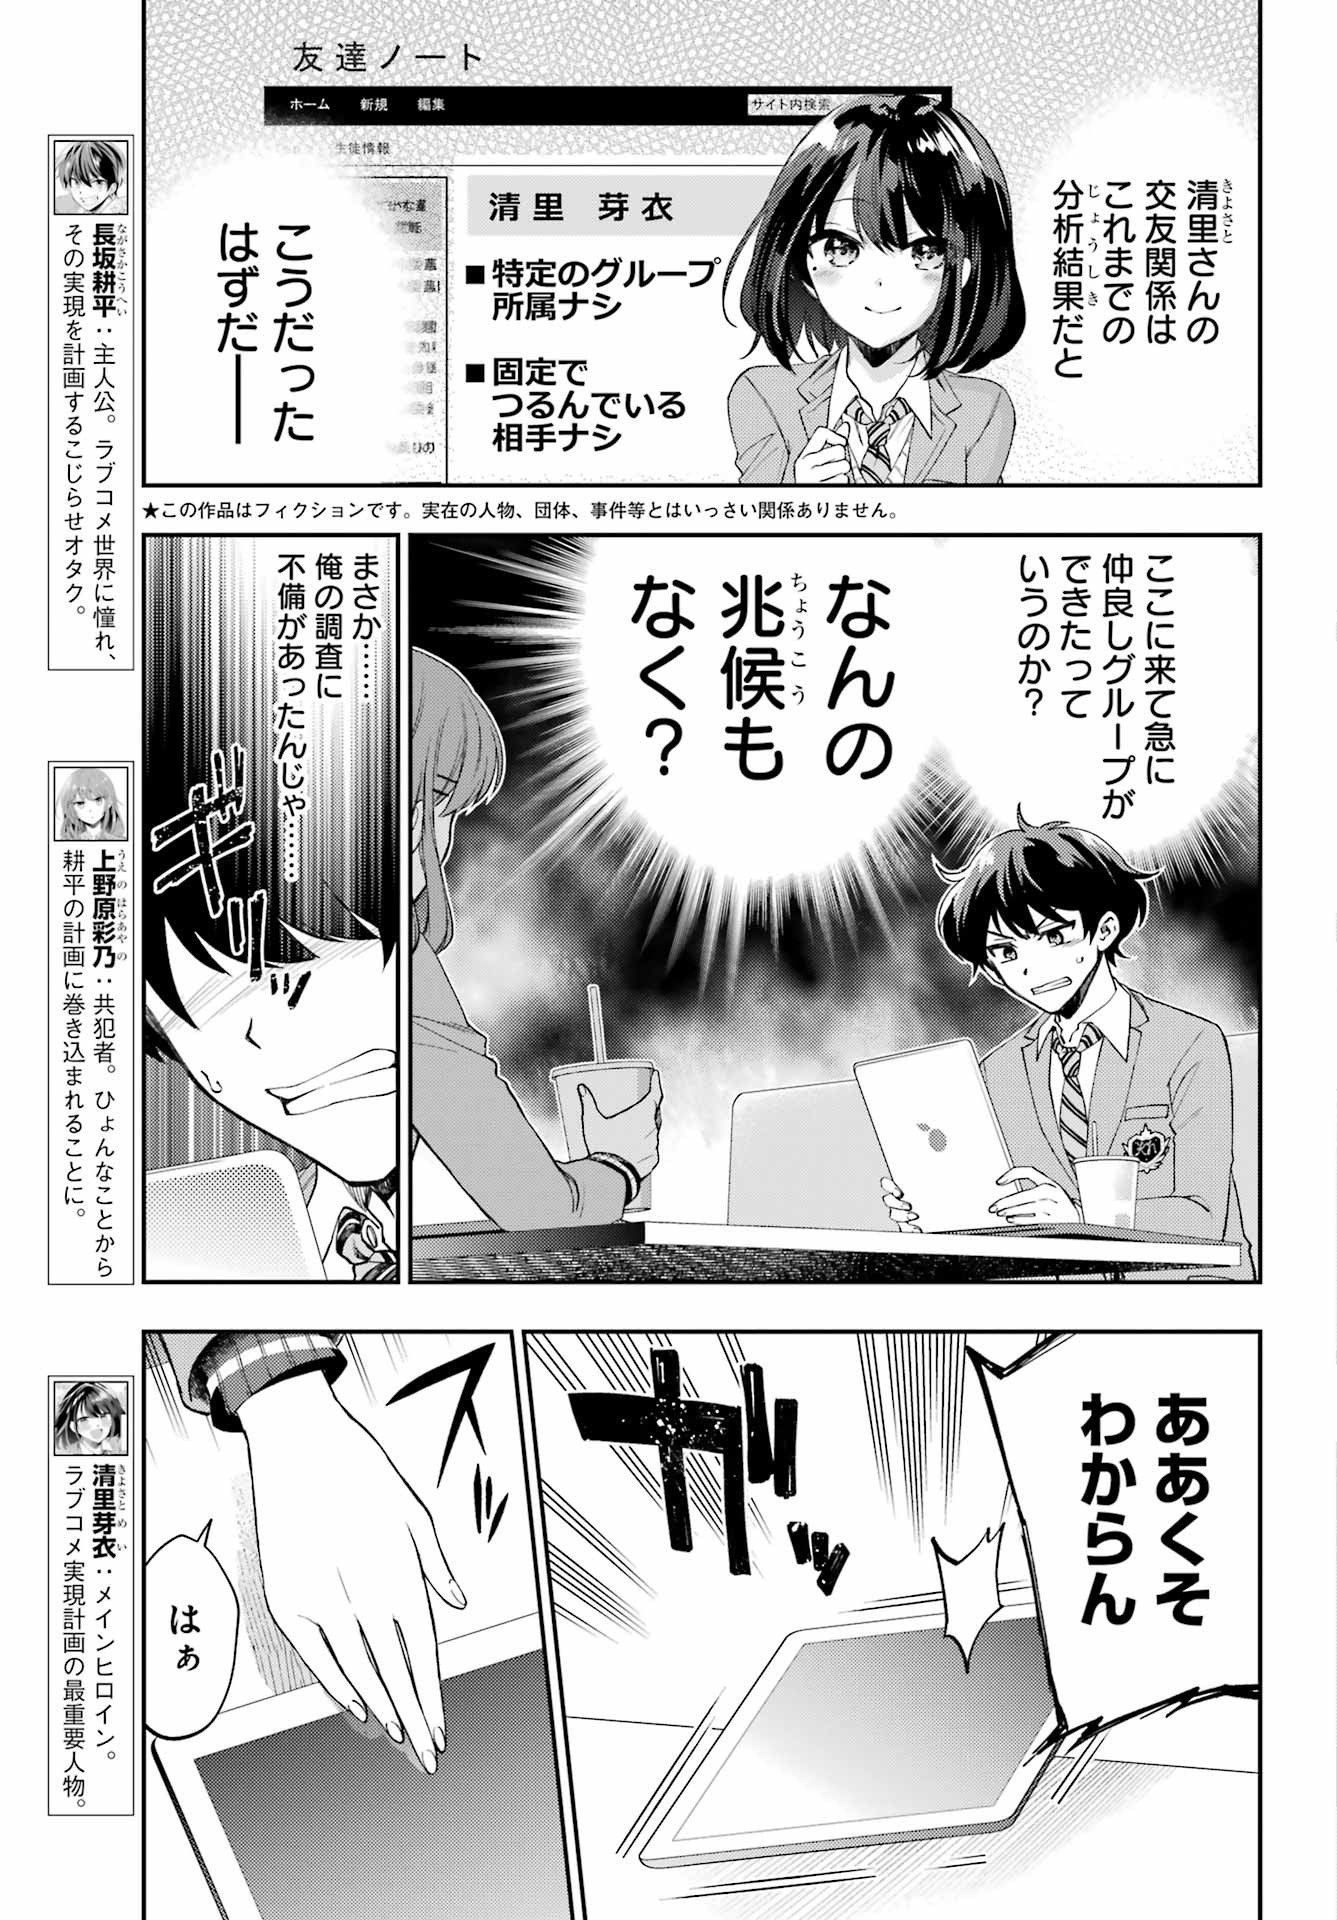 Genjitsu-de-Rabukome-Dekinai-to-Dare-ga-Kimeta - Chapter 09 - Page 4